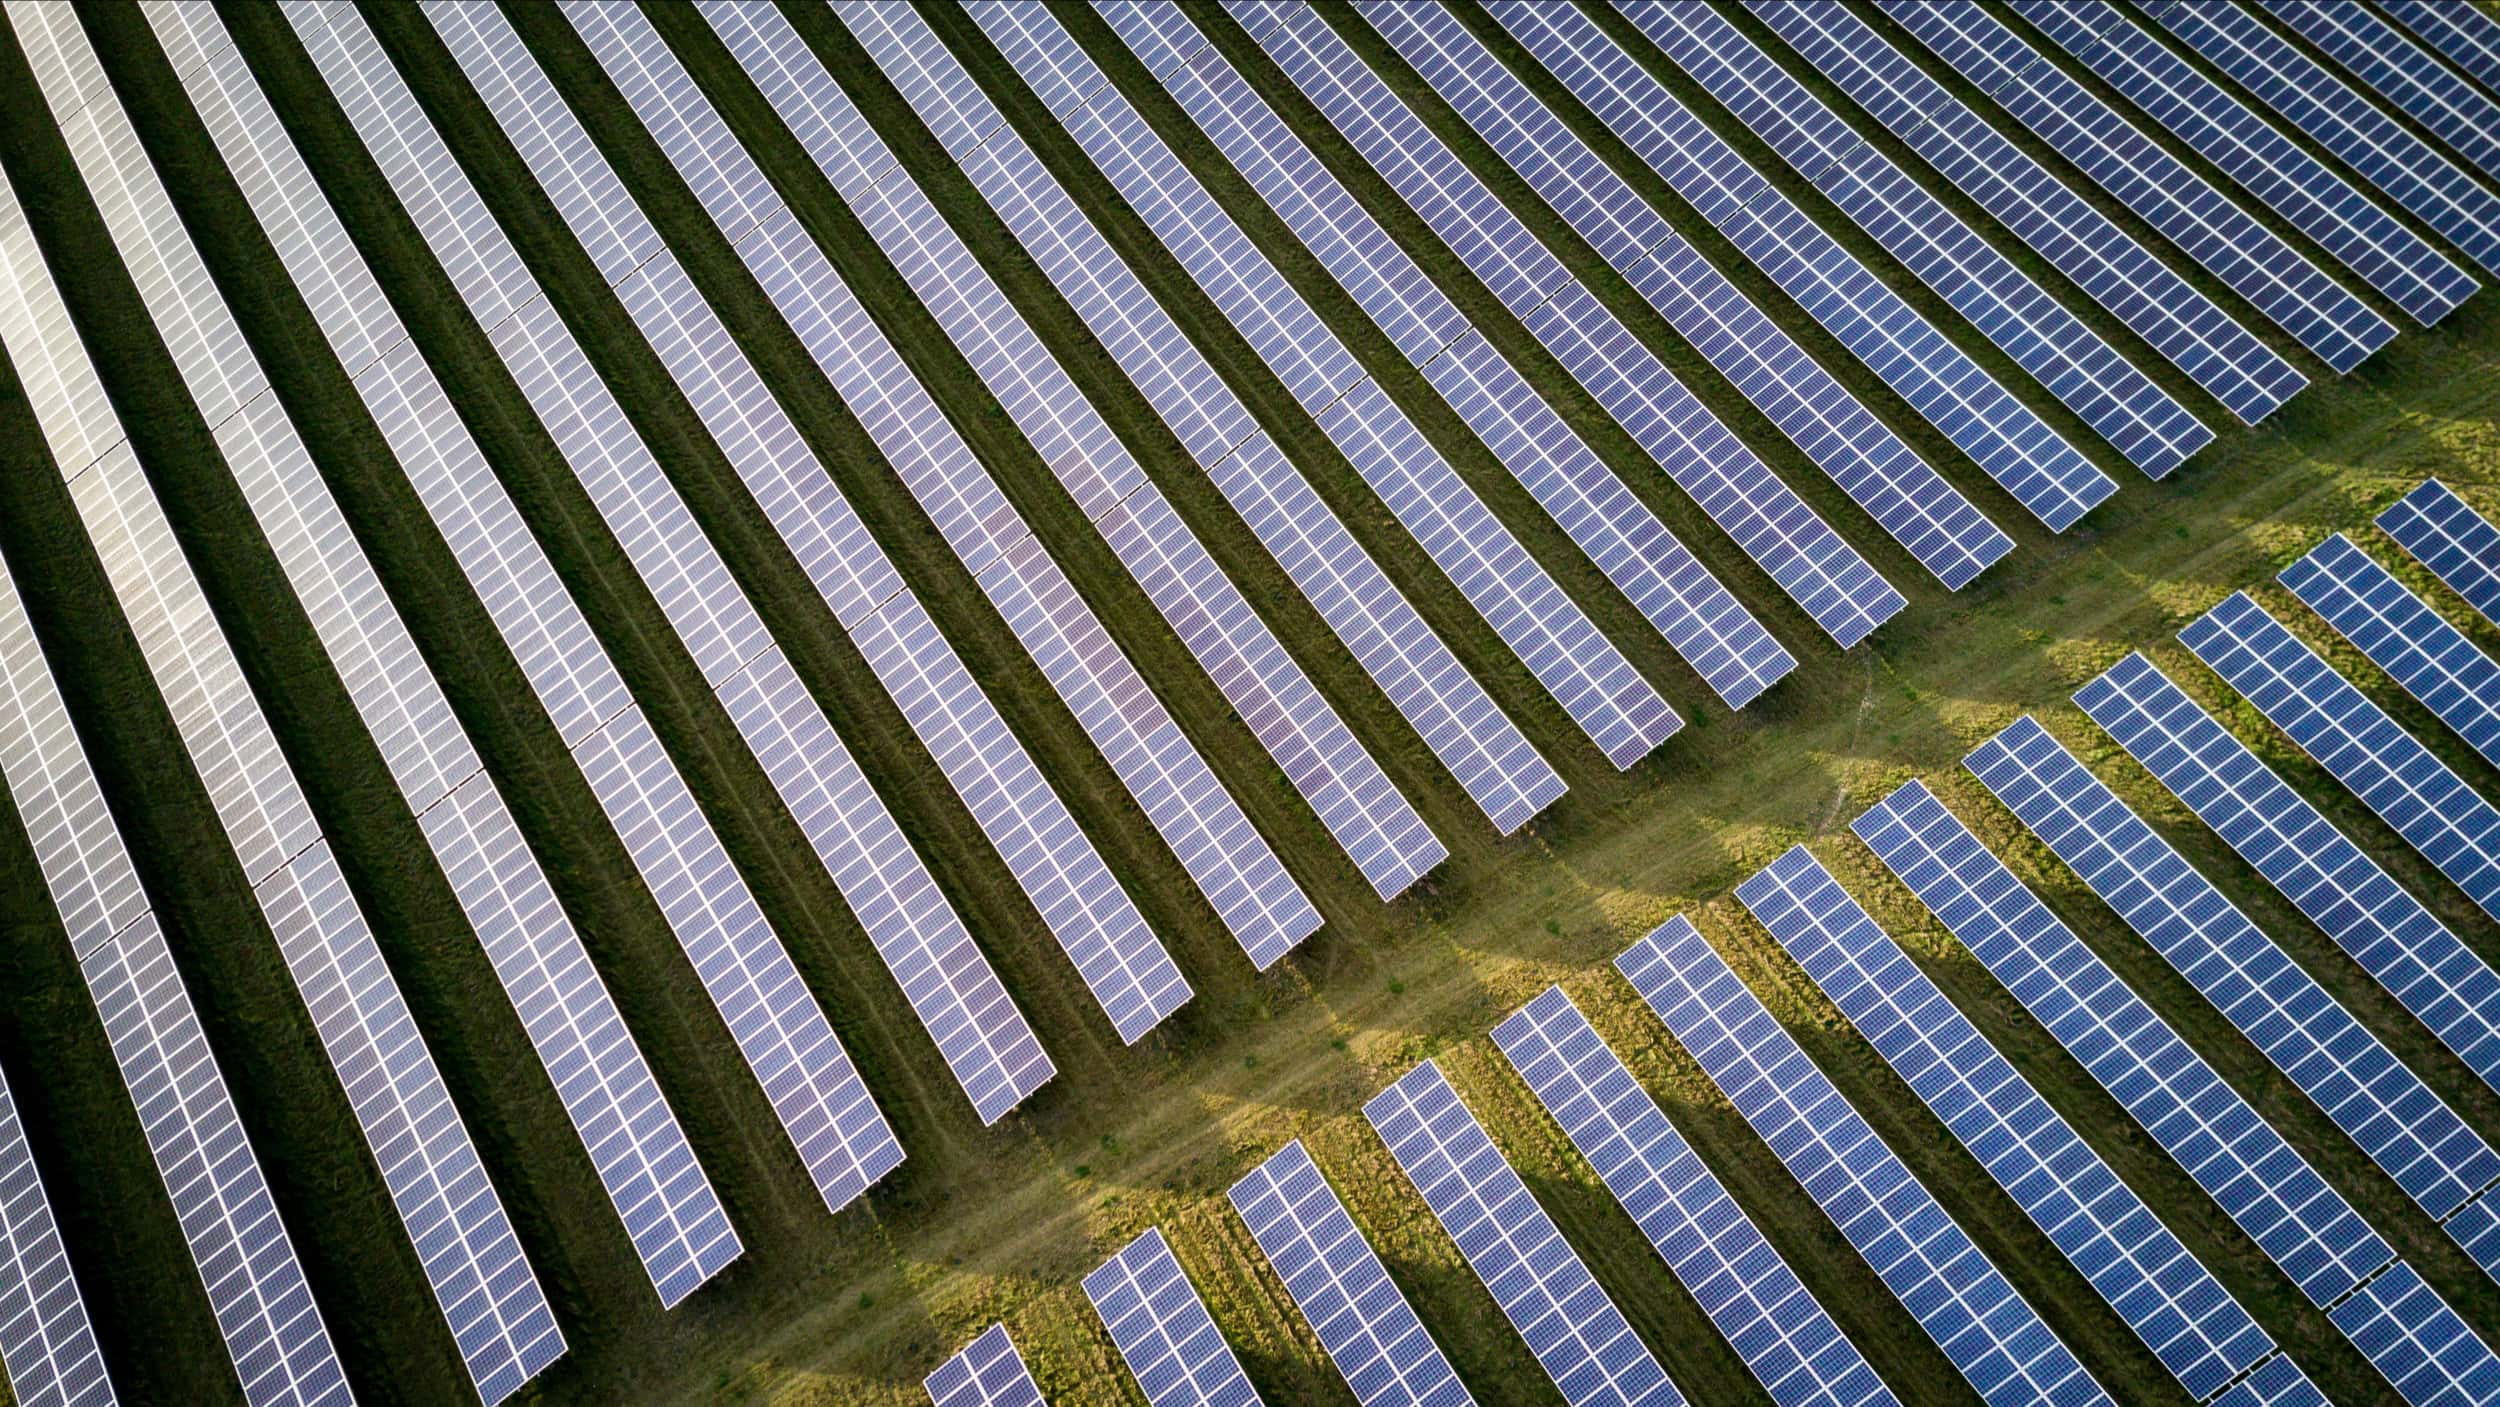 Solar panels in a field.
